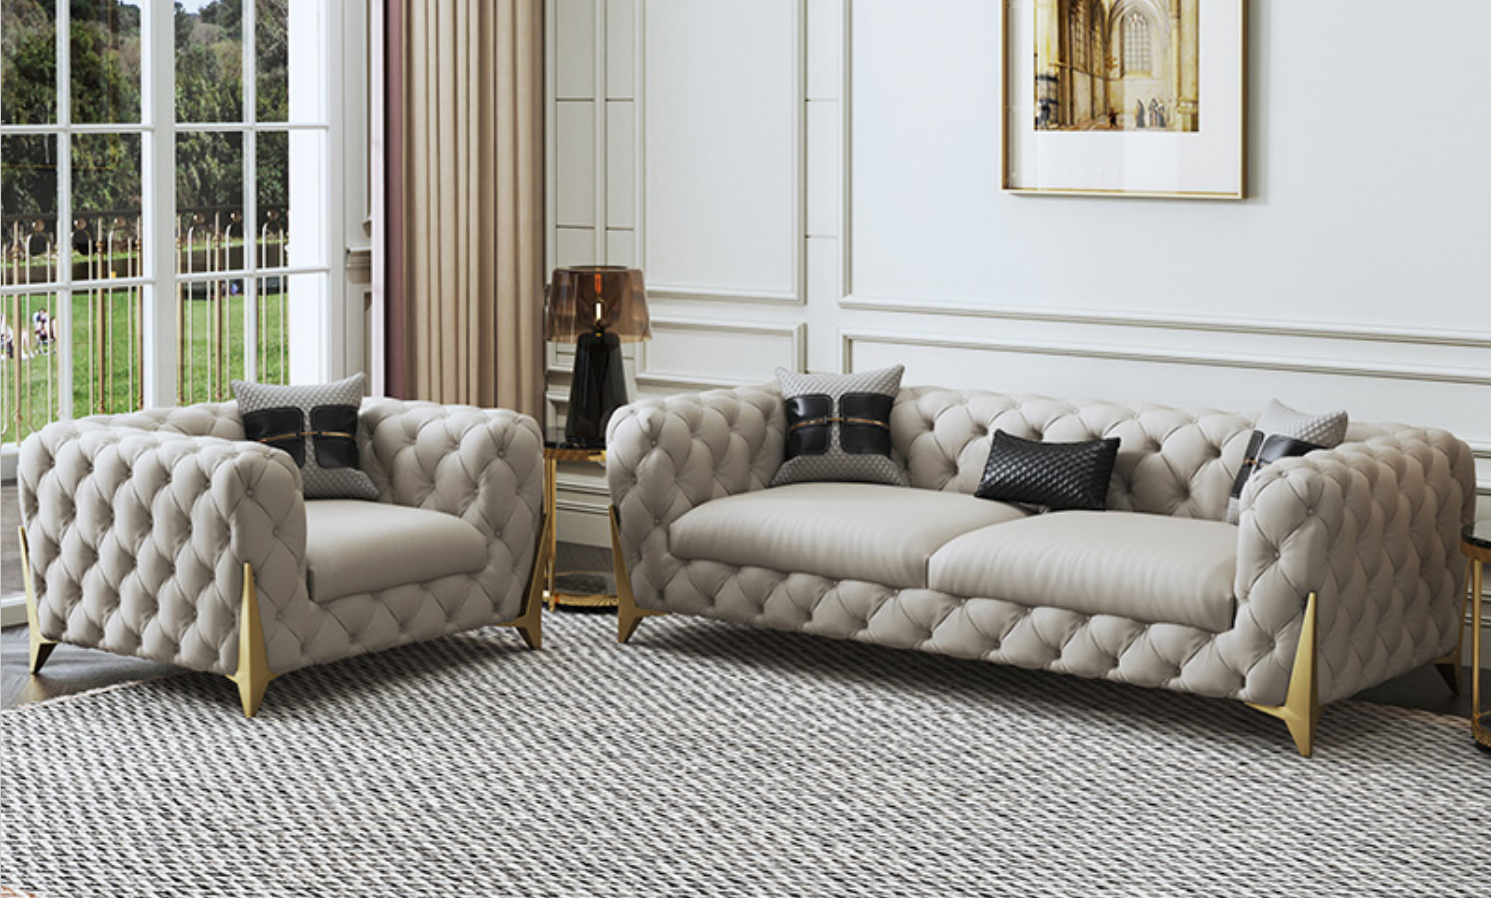 Sofagarnitur Big Set 3+1 Sitzer Leder Couch Sofa Garnitur Design Couchen